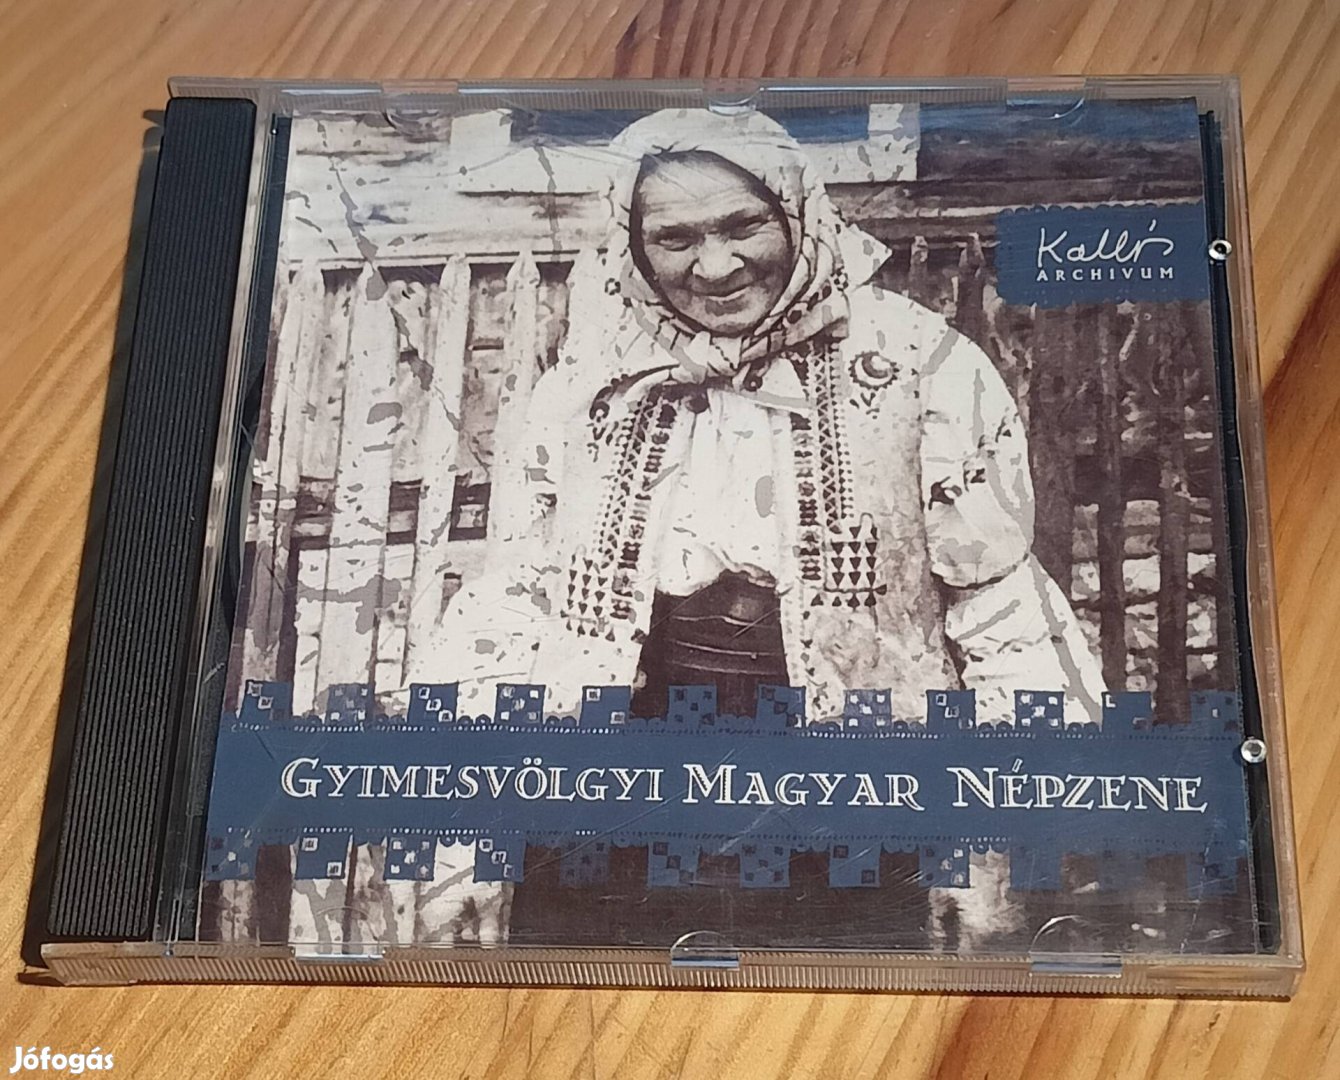 Gyimesvölgyi magyar népzene CD